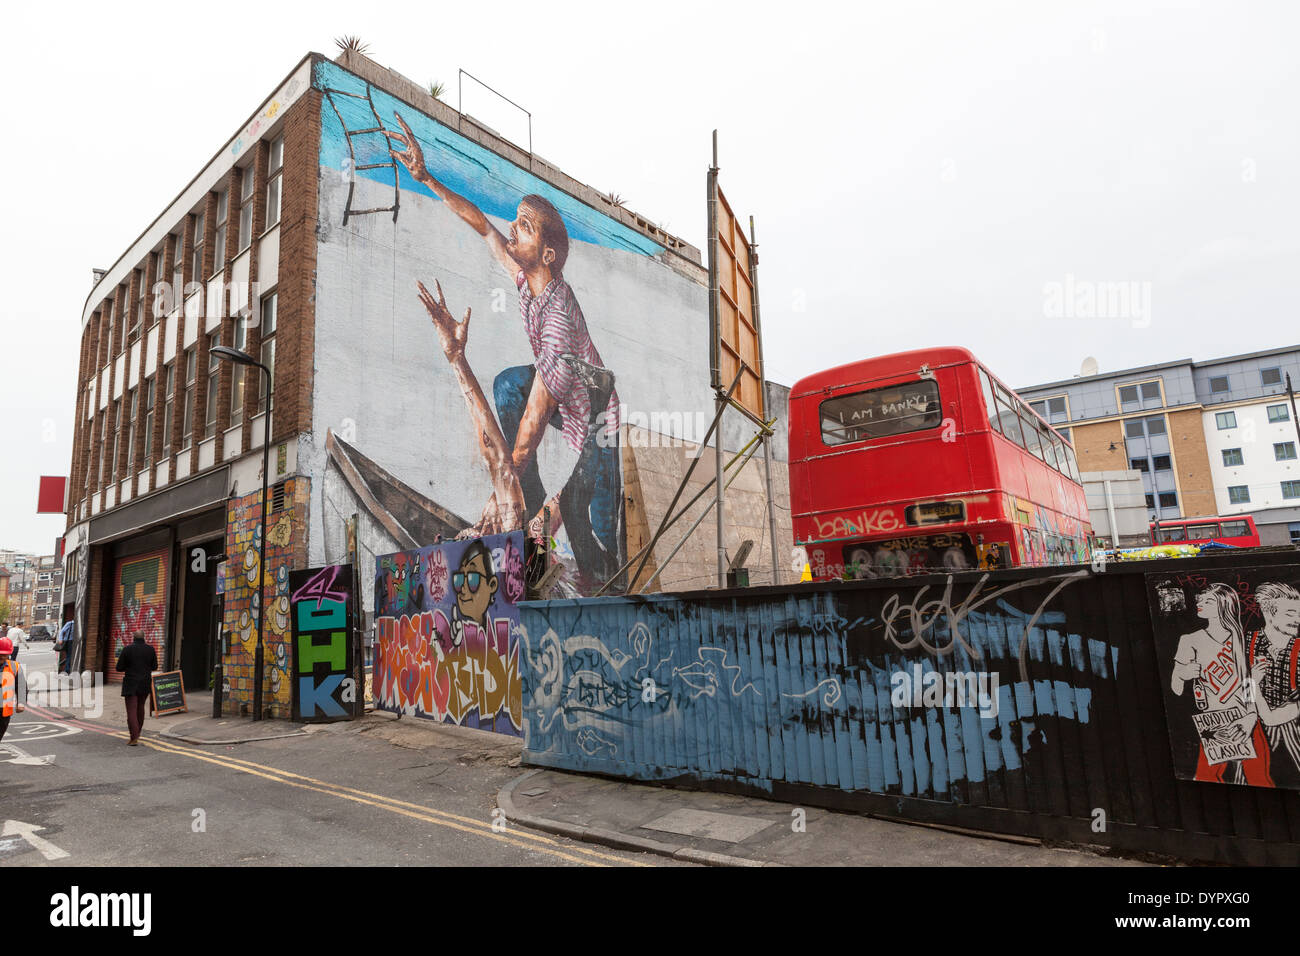 La supervivencia del más apto en mural de Fintan Magee, Londres Foto de stock